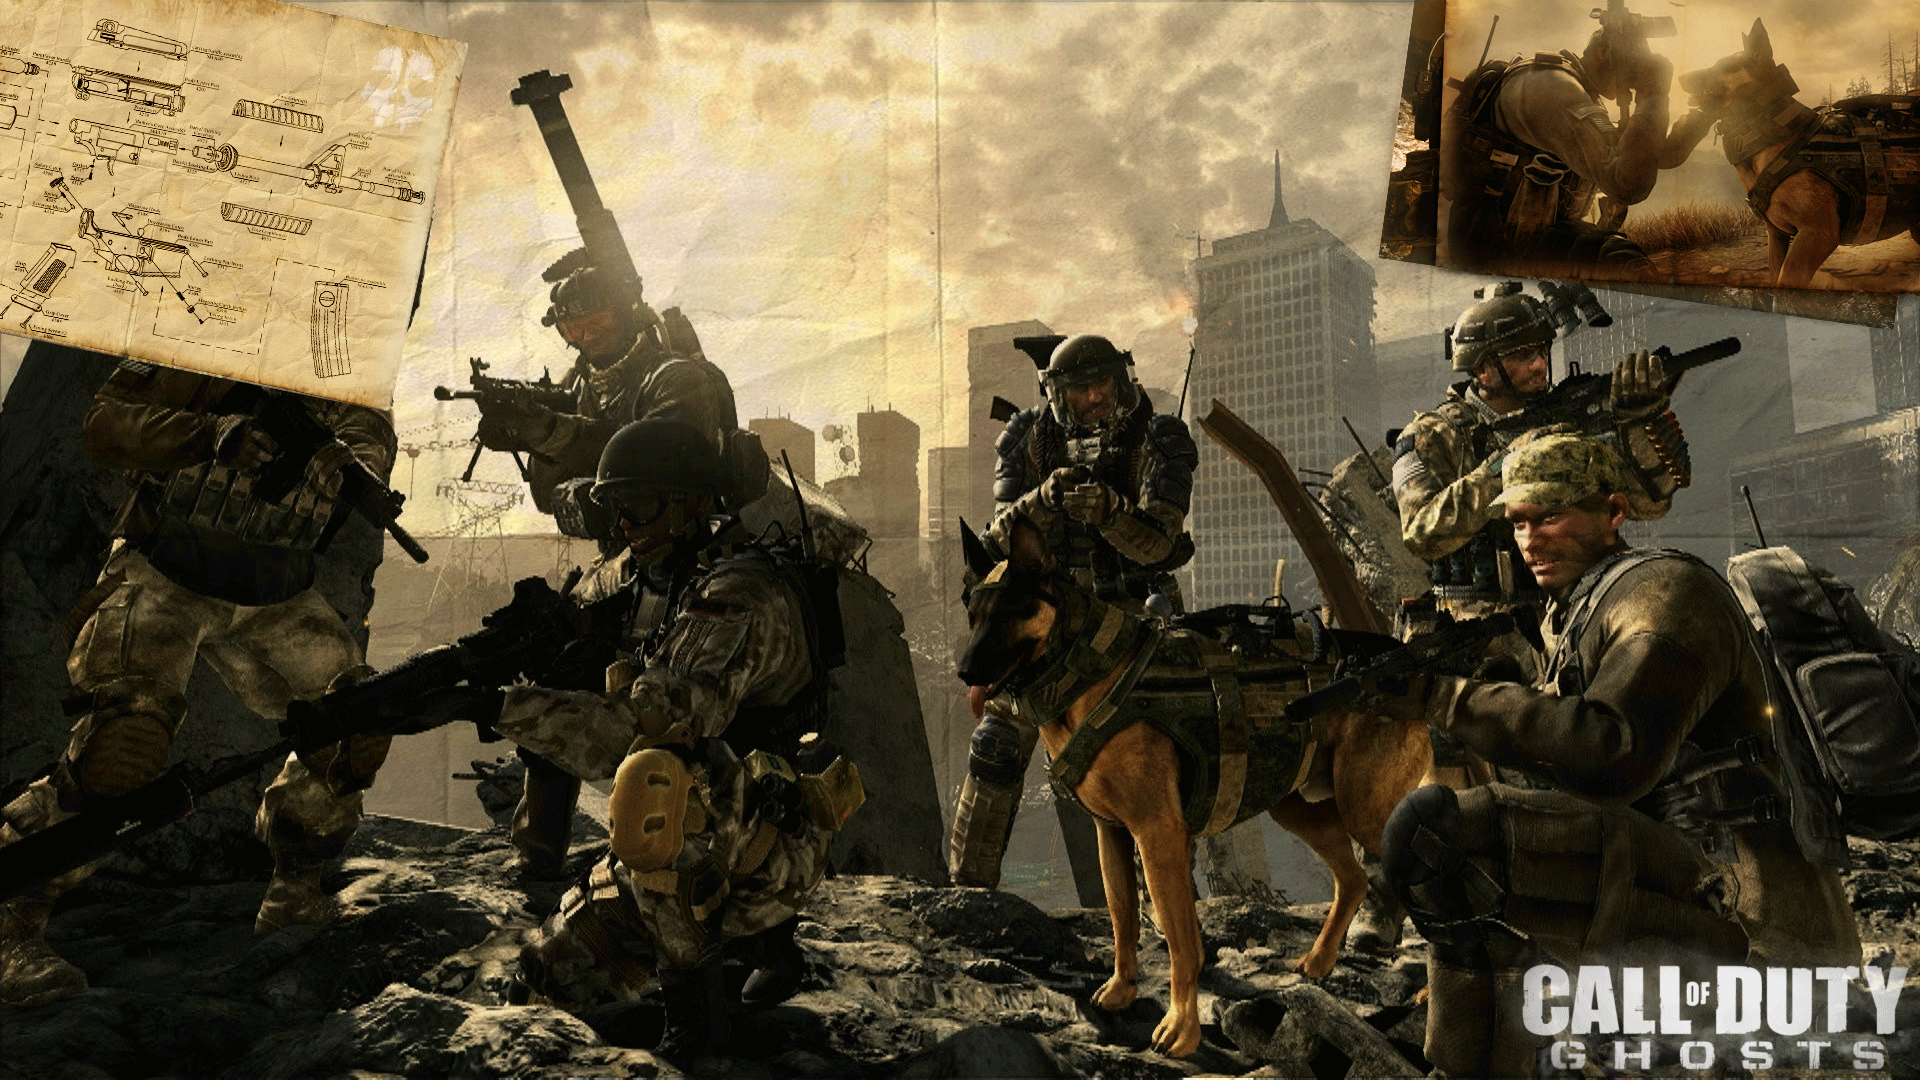 50+] Call of Duty Ghosts Wallpaper - WallpaperSafari